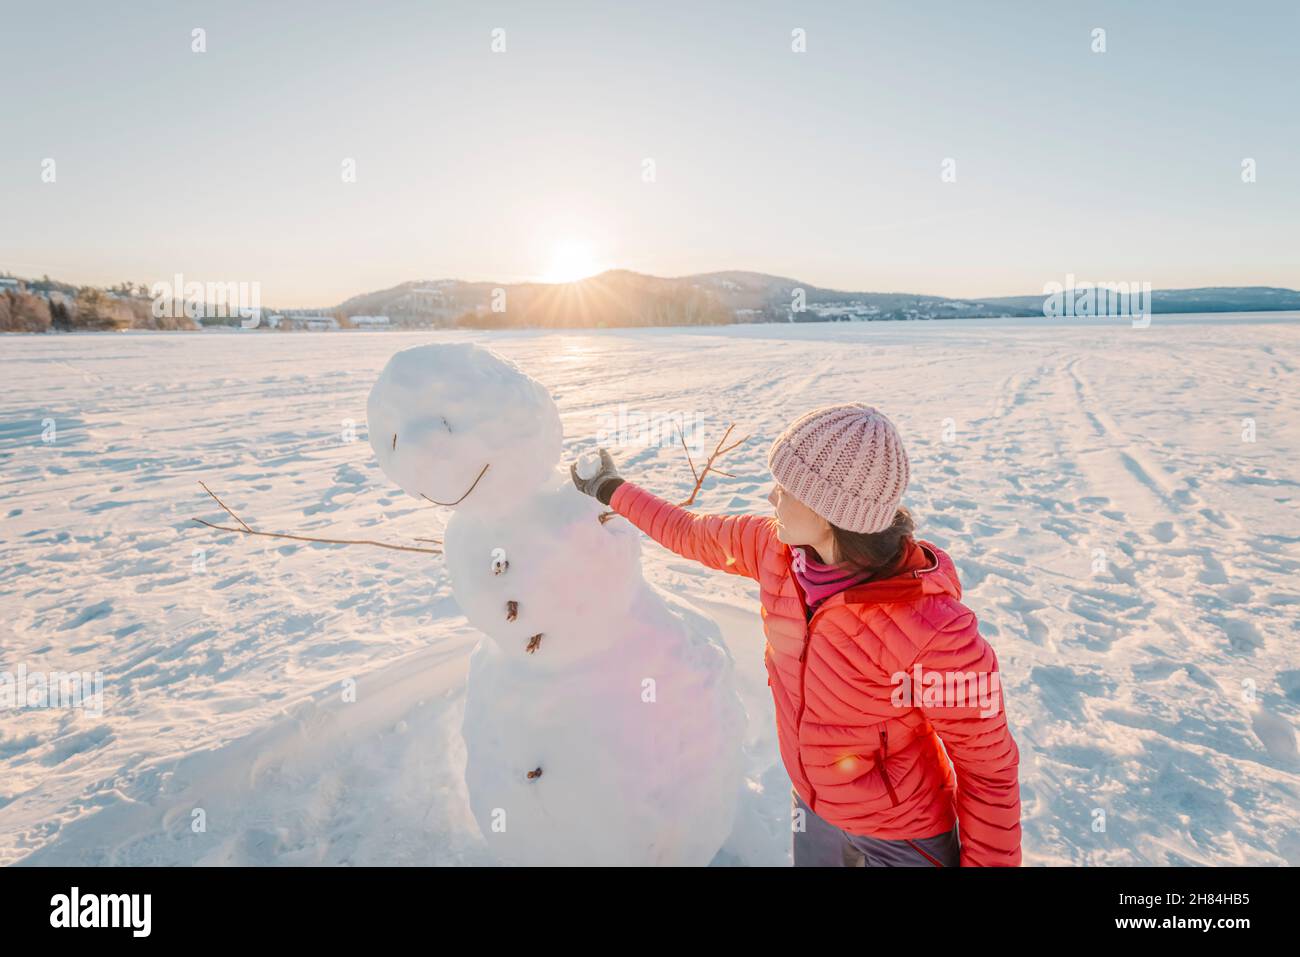 Frau macht Schneemann im Winter See Schnee Natur Landschaft Spaß genießen aktiven Winter Lebensstil bei schönem Sonnenuntergang am sonnigen Wintertag. Stockfoto